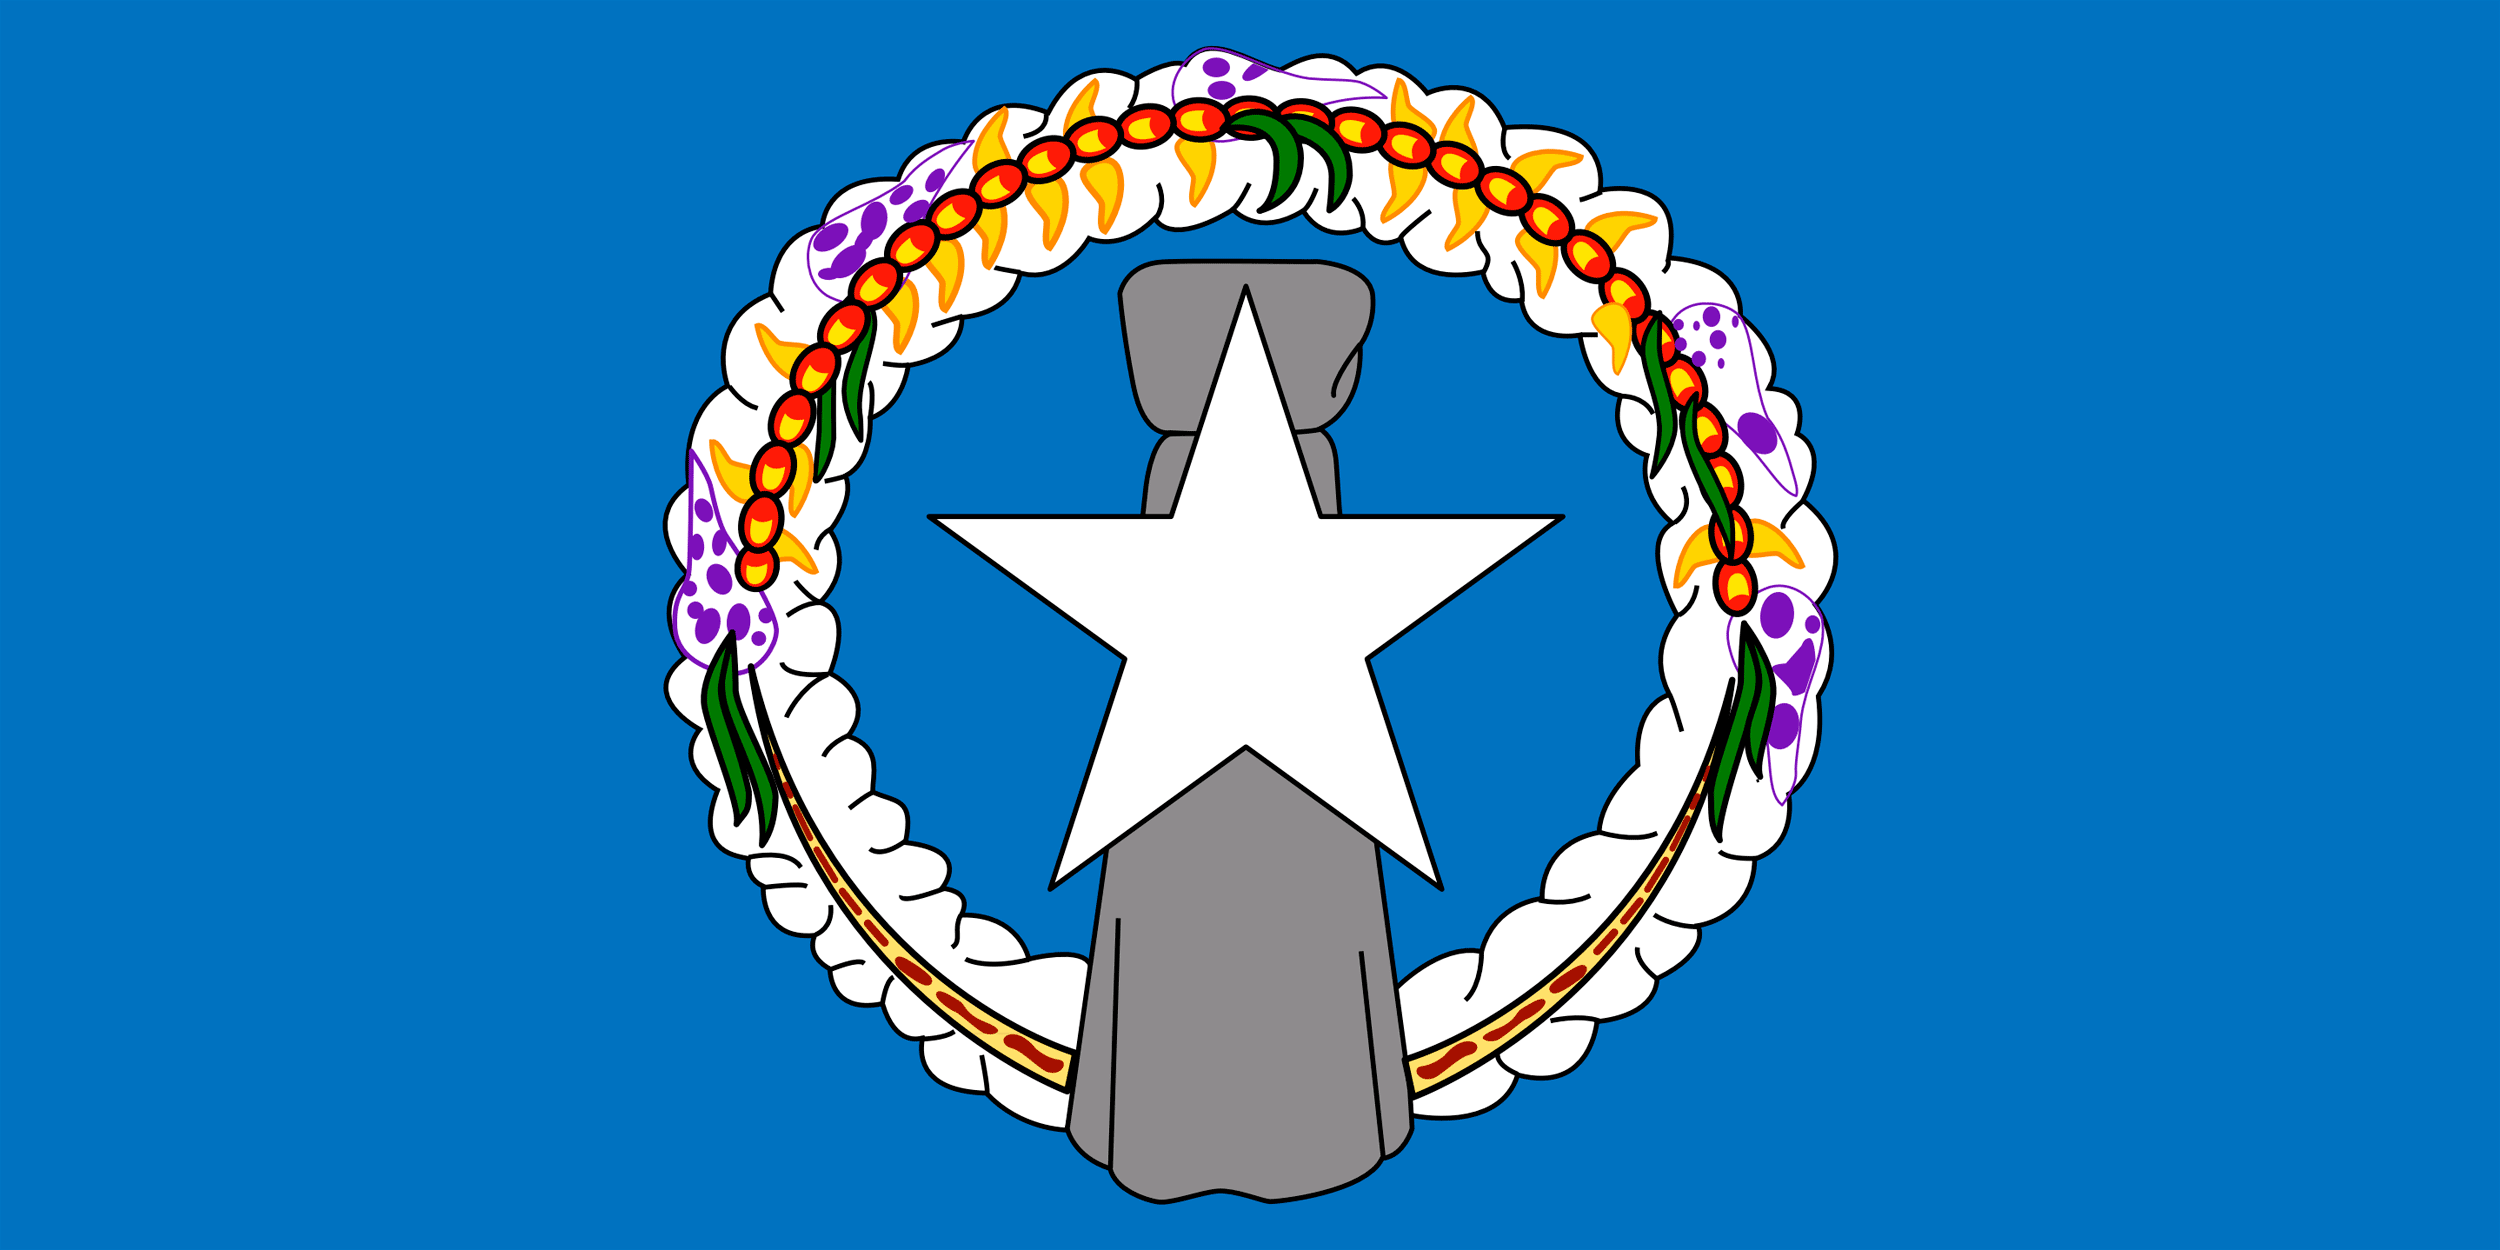 Northern Mariana Islands